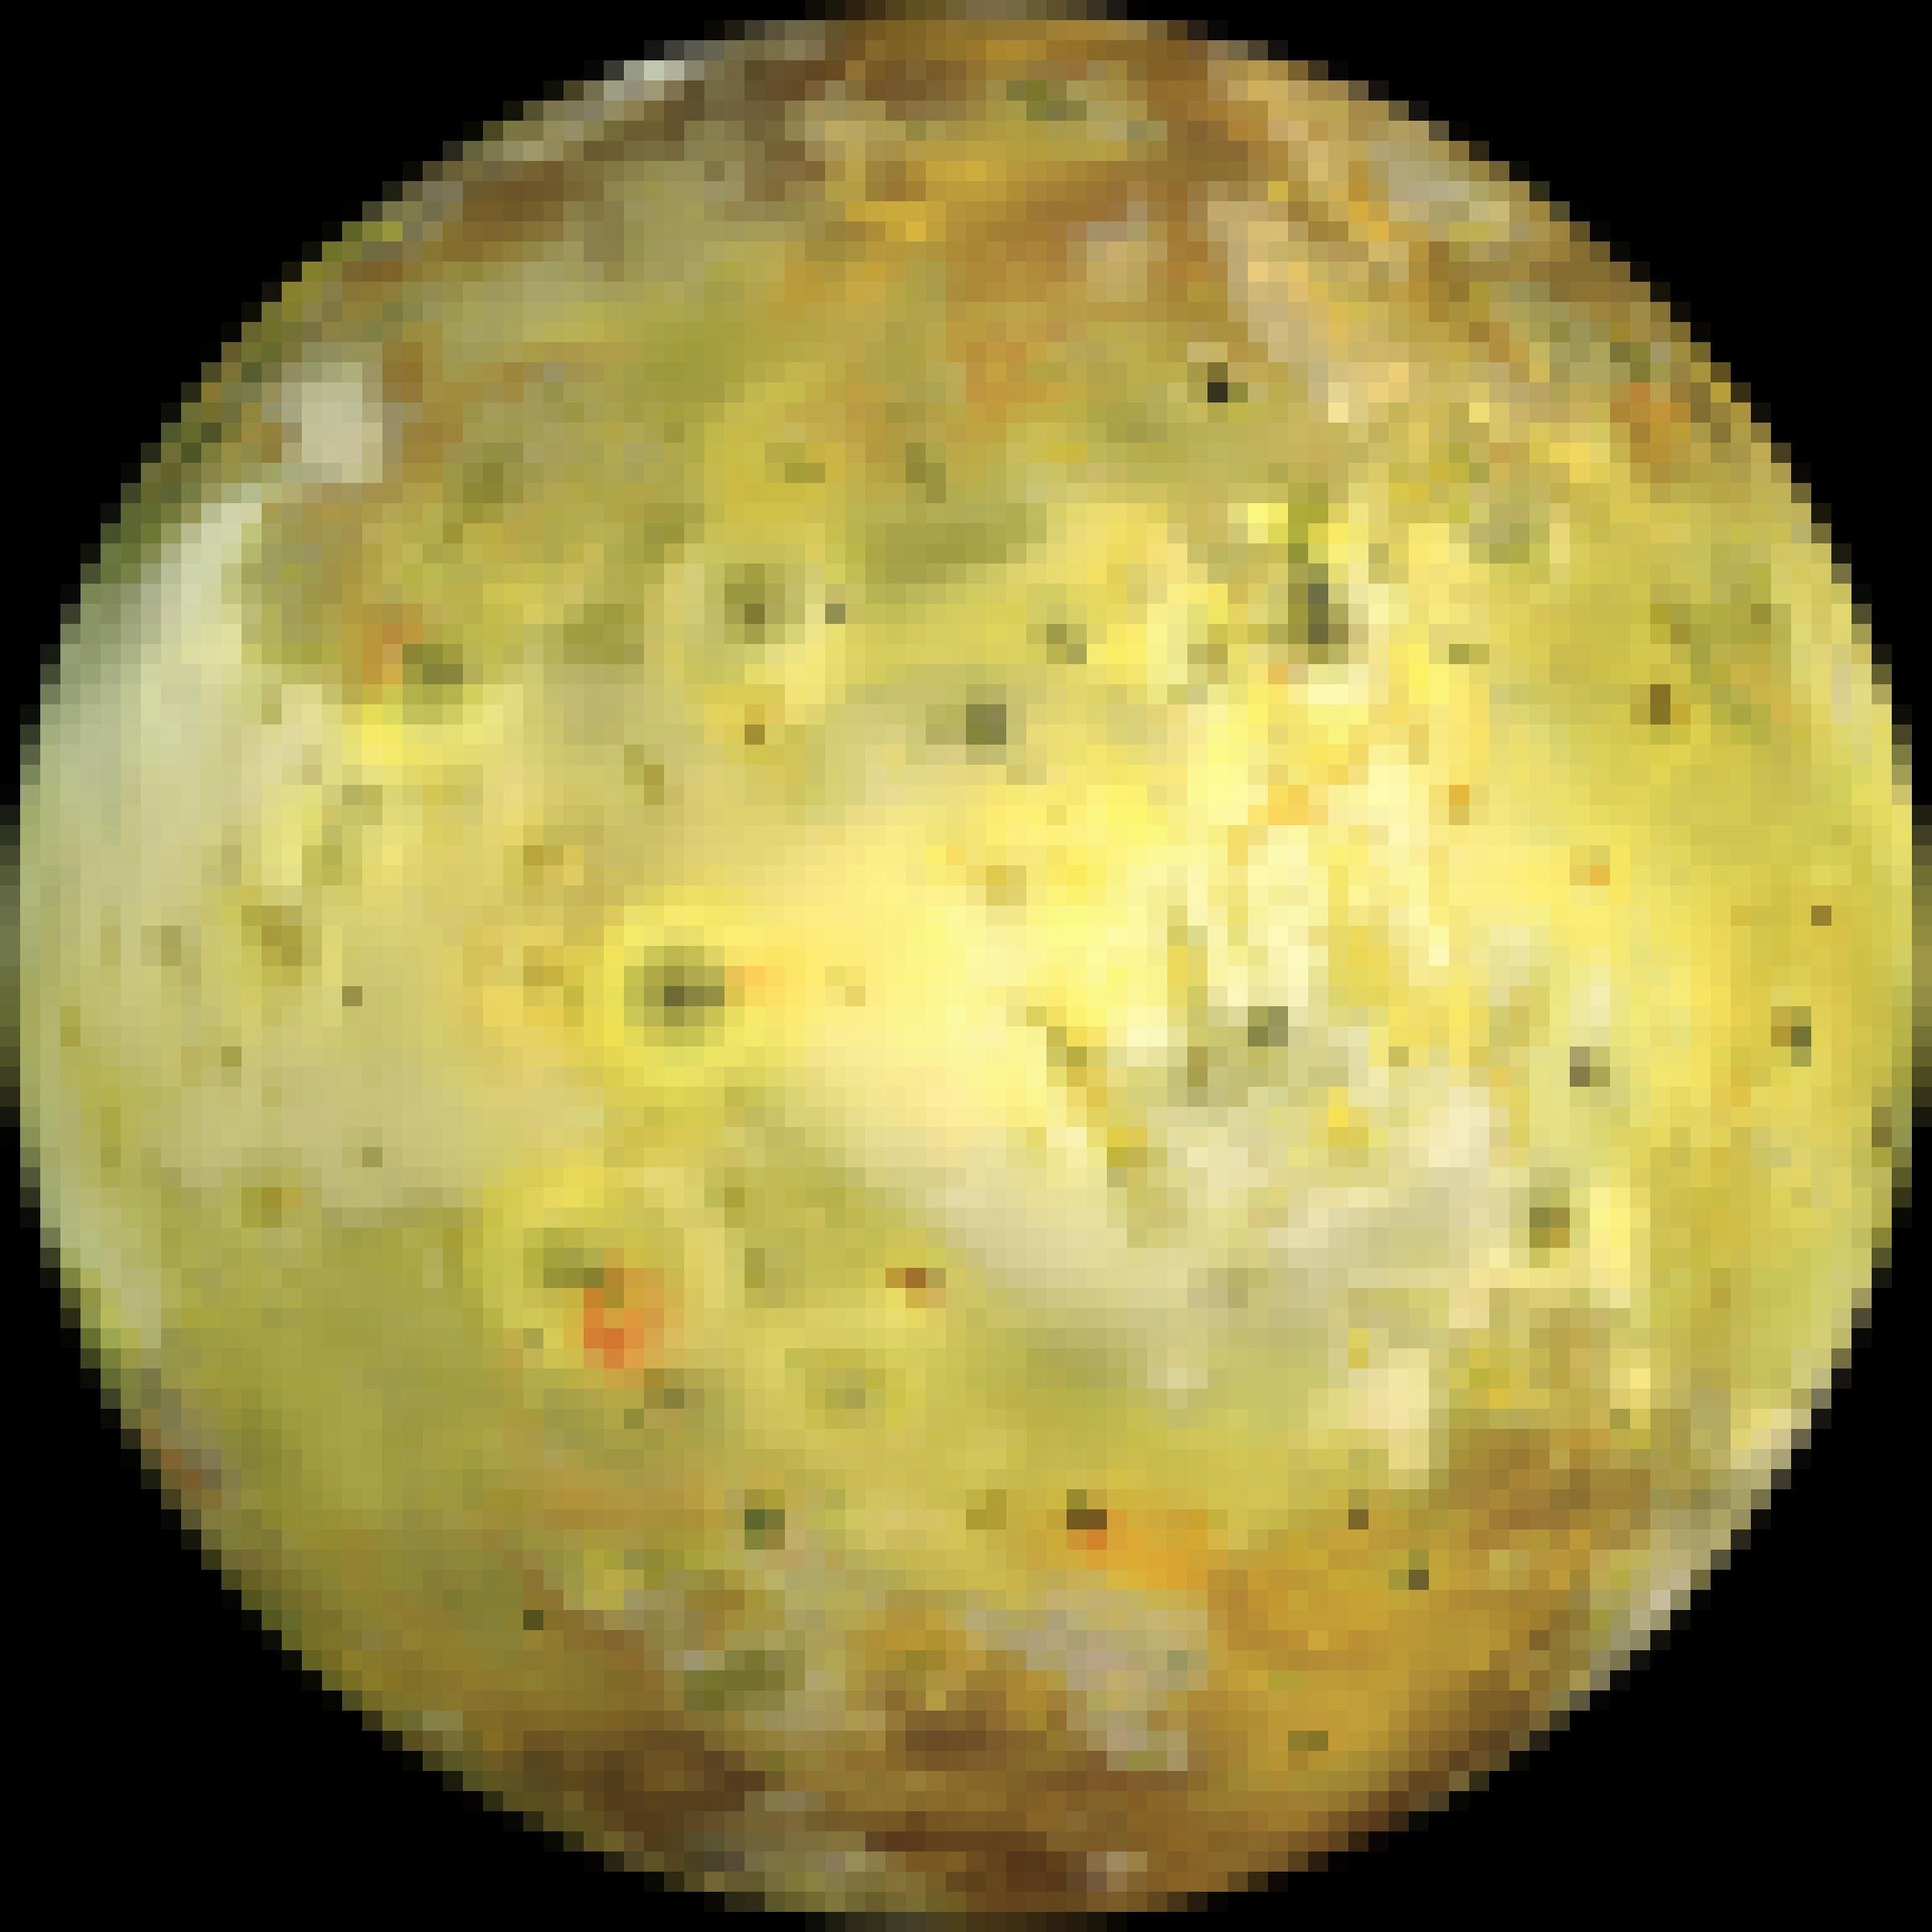 Io, der innerste der vier galileischen Monde des Jupiter, besitzt eine helle Oberfläche mit dunklen Flecken, die von Vulkanismus herrühren.